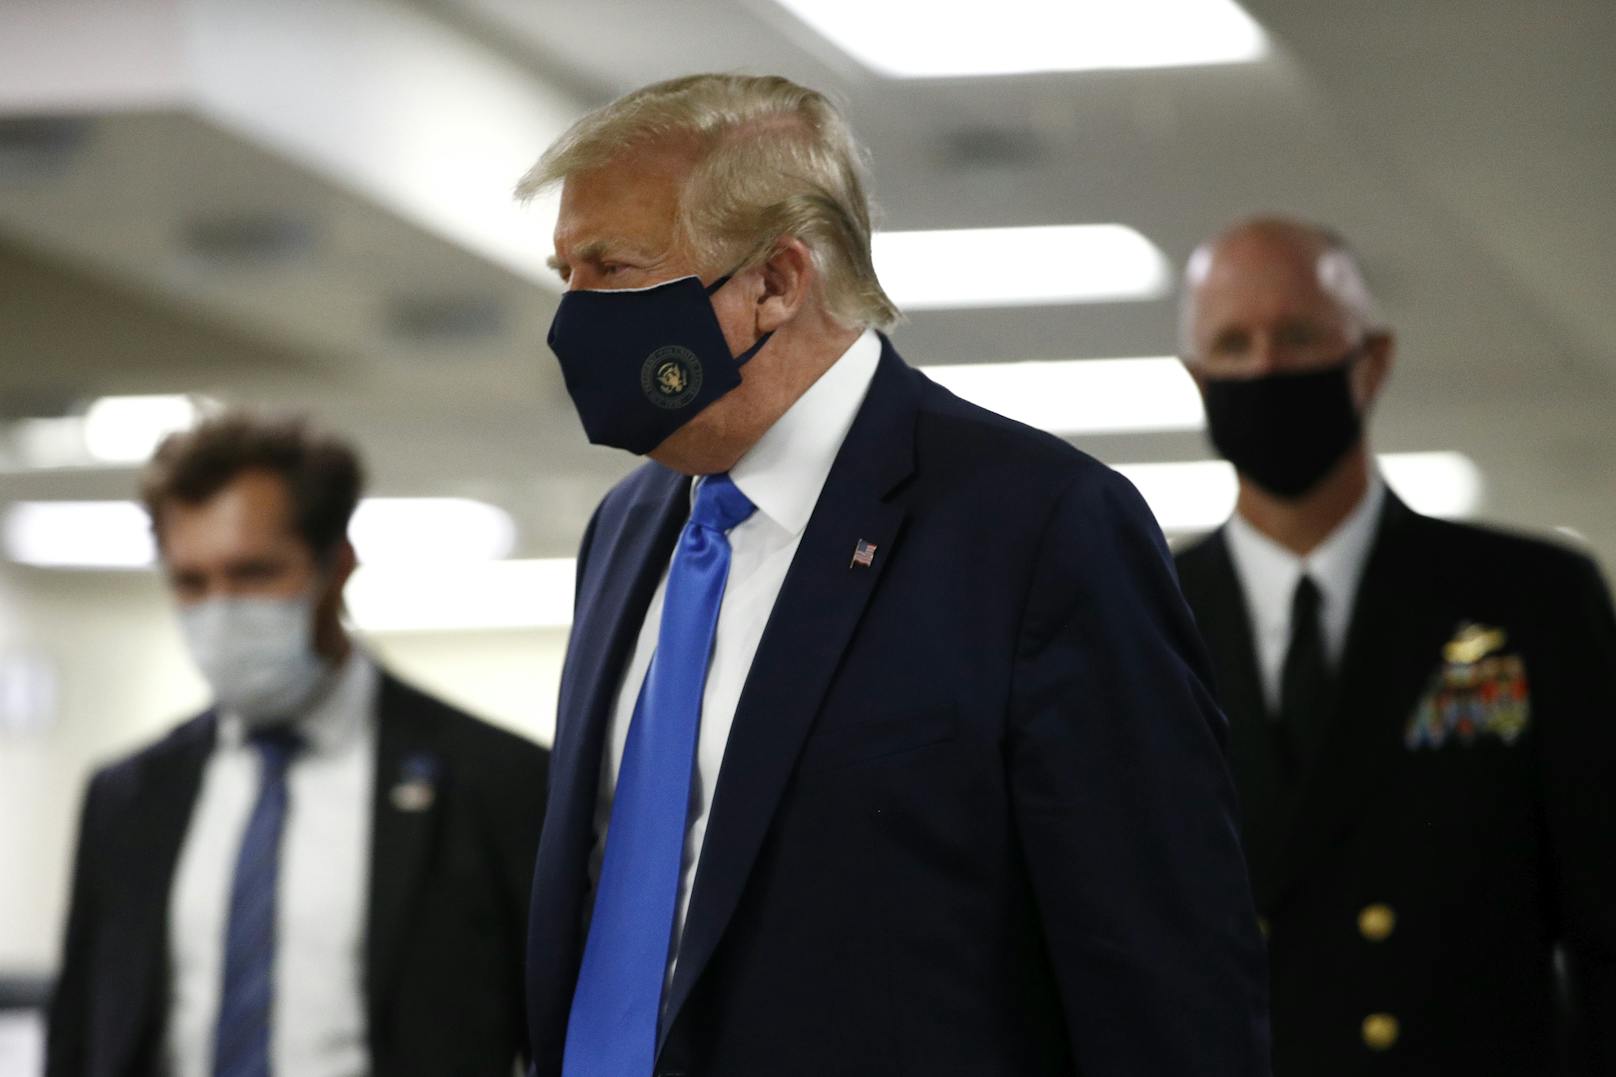 Dass Trump bislang keinen Mund-Nasen-Schutz trug, begründete das Weiße Haus damit, dass der Präsident regelmäßig auf Corona getestet werde.